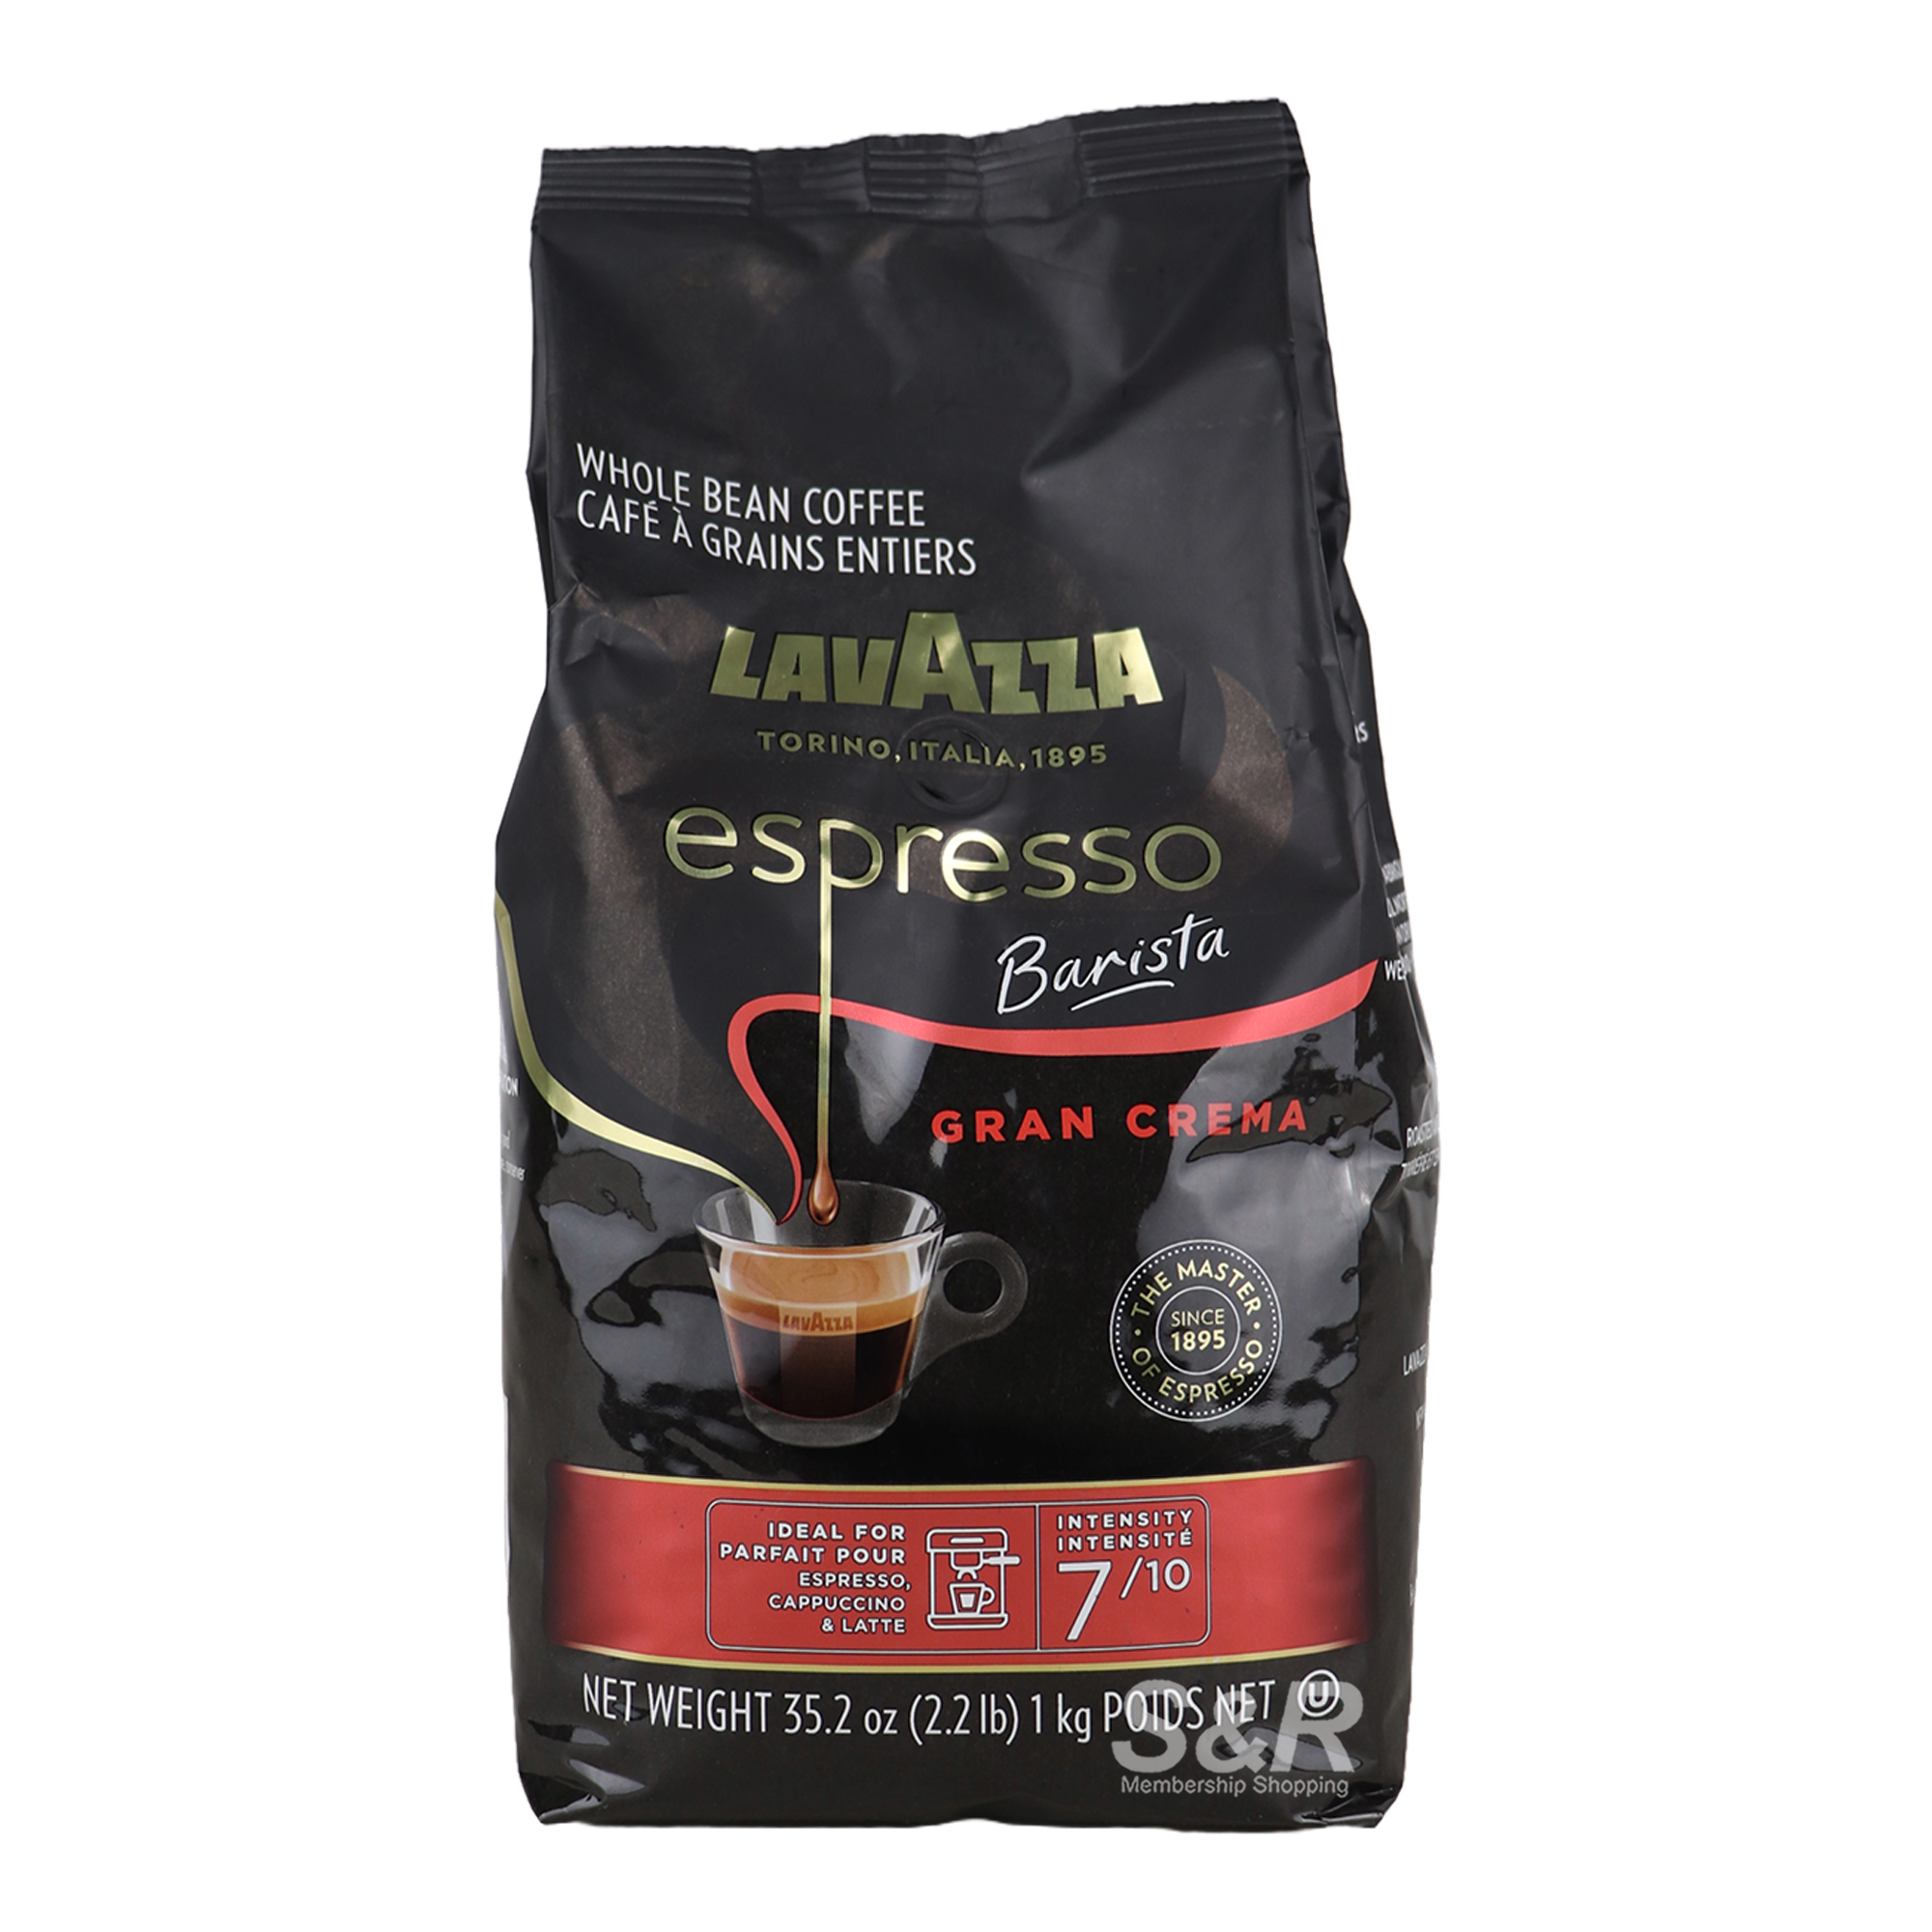 Lavazza Espresso Barista Whole Bean Coffee 1kg